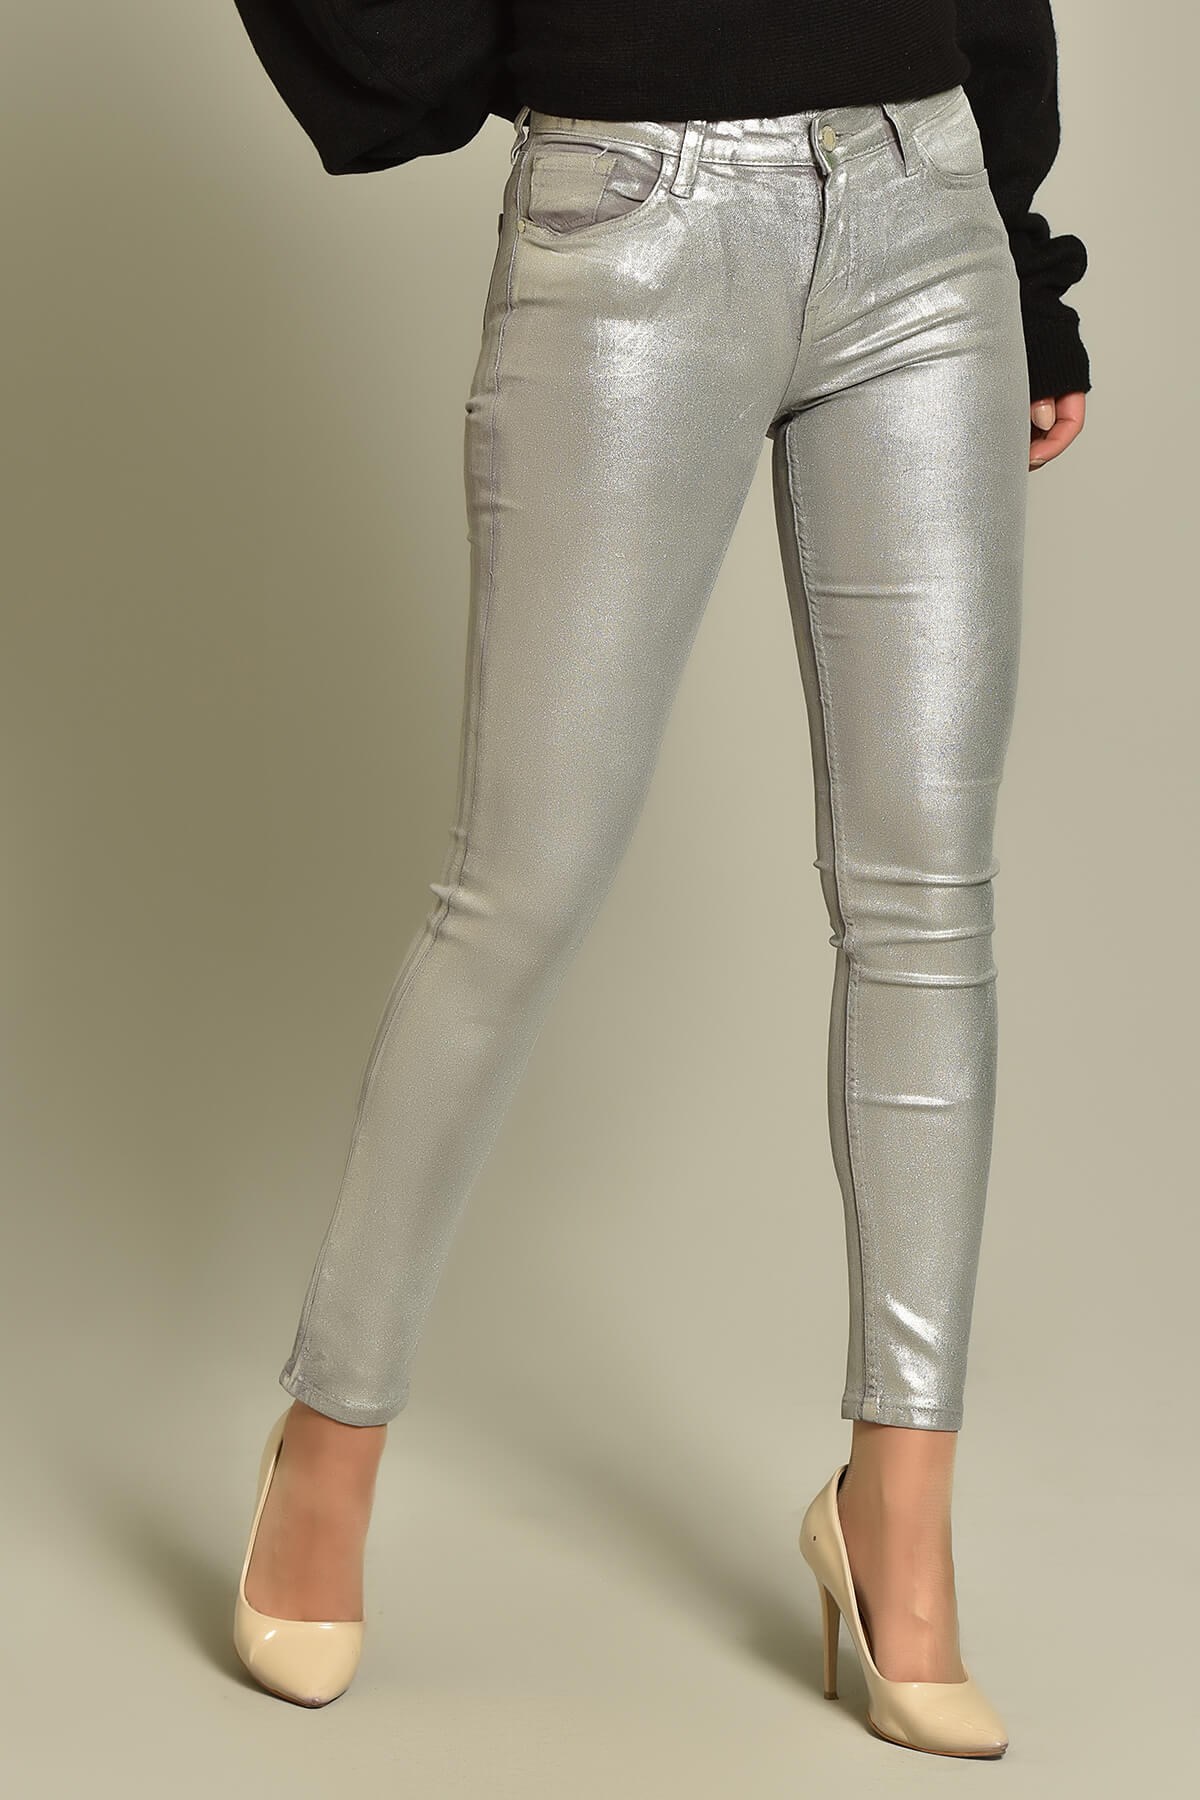 Gümüş Varaklı Slim Fit Jean Pantolon - Moda Kapımda İle Kapınızda!